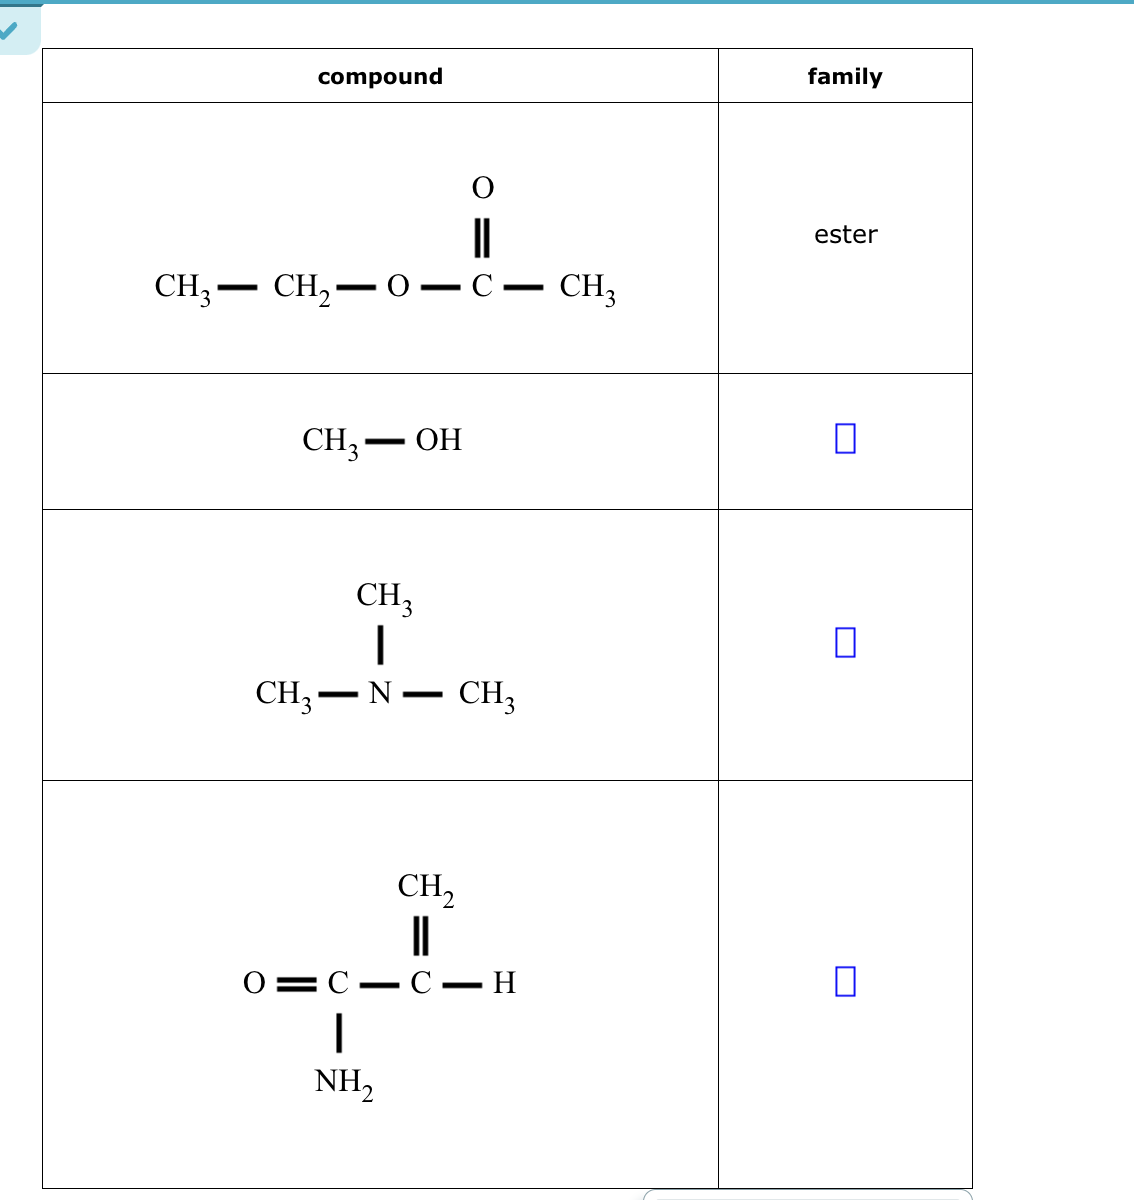 compound
CH3 CH₂0
CH3 — OH
C-
CH3
1
CH3-N - CH3
CH₂
|||
-C-H
01C-
|
NH₂
CH3
family
ester